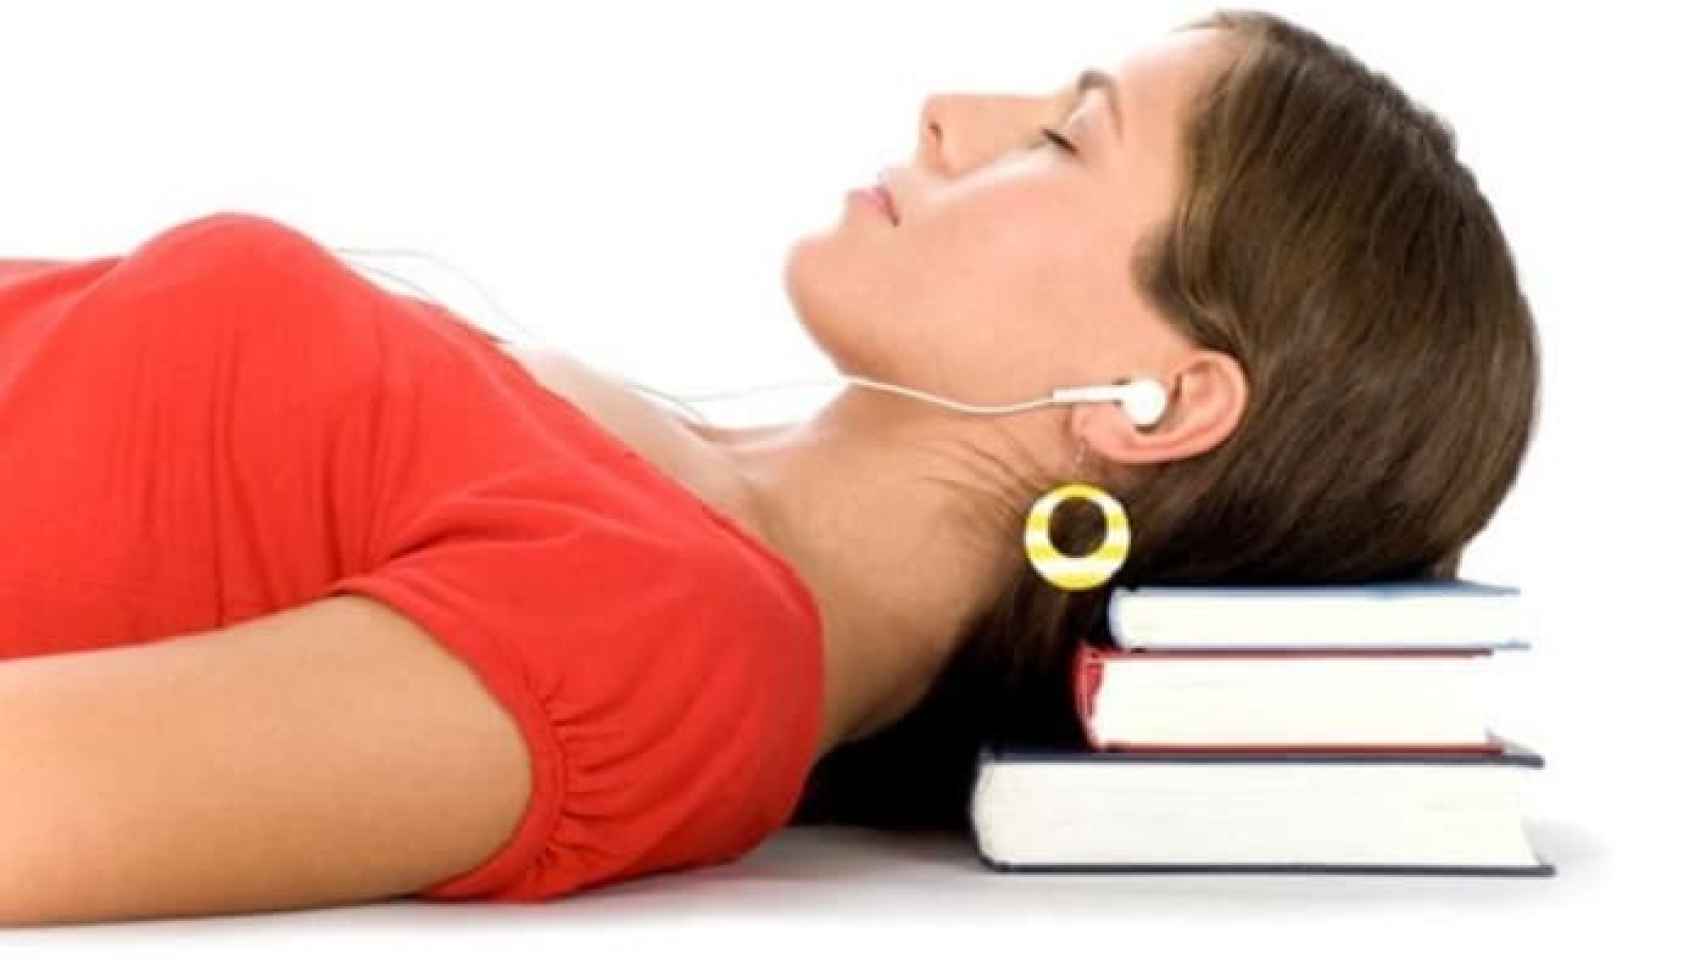 Es malo dormir con los auriculares puestos?